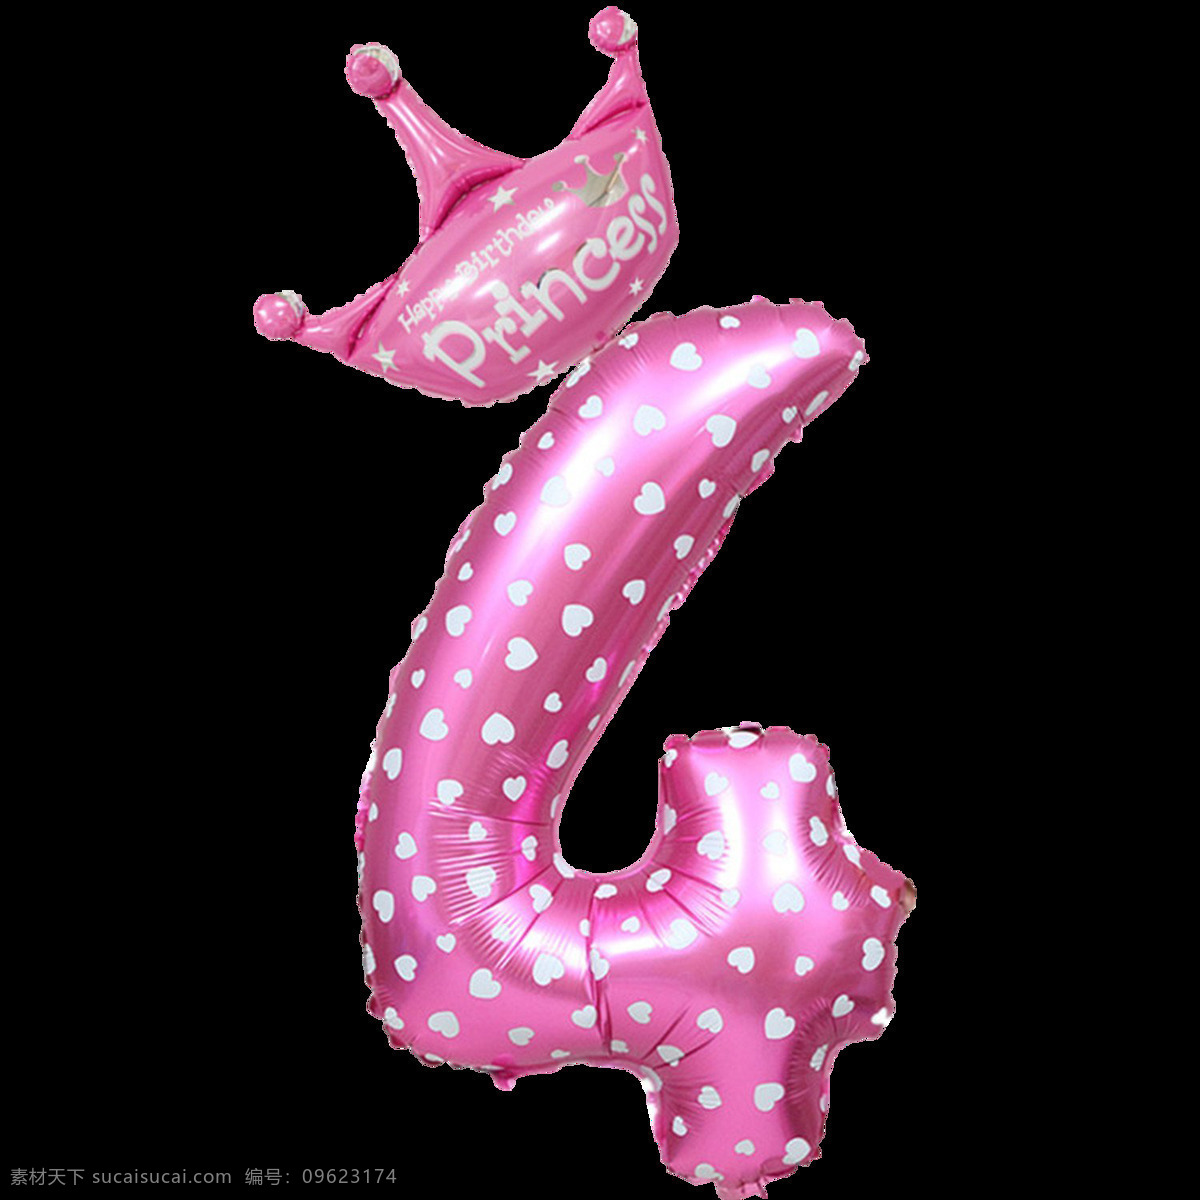 粉色气球字4 粉色气球字 王冠气球字 气球字 气球数字 铝膜气球字母 装饰字 派对气球 气球文字 字母气球 铝箔气球 3d设计 3d作品